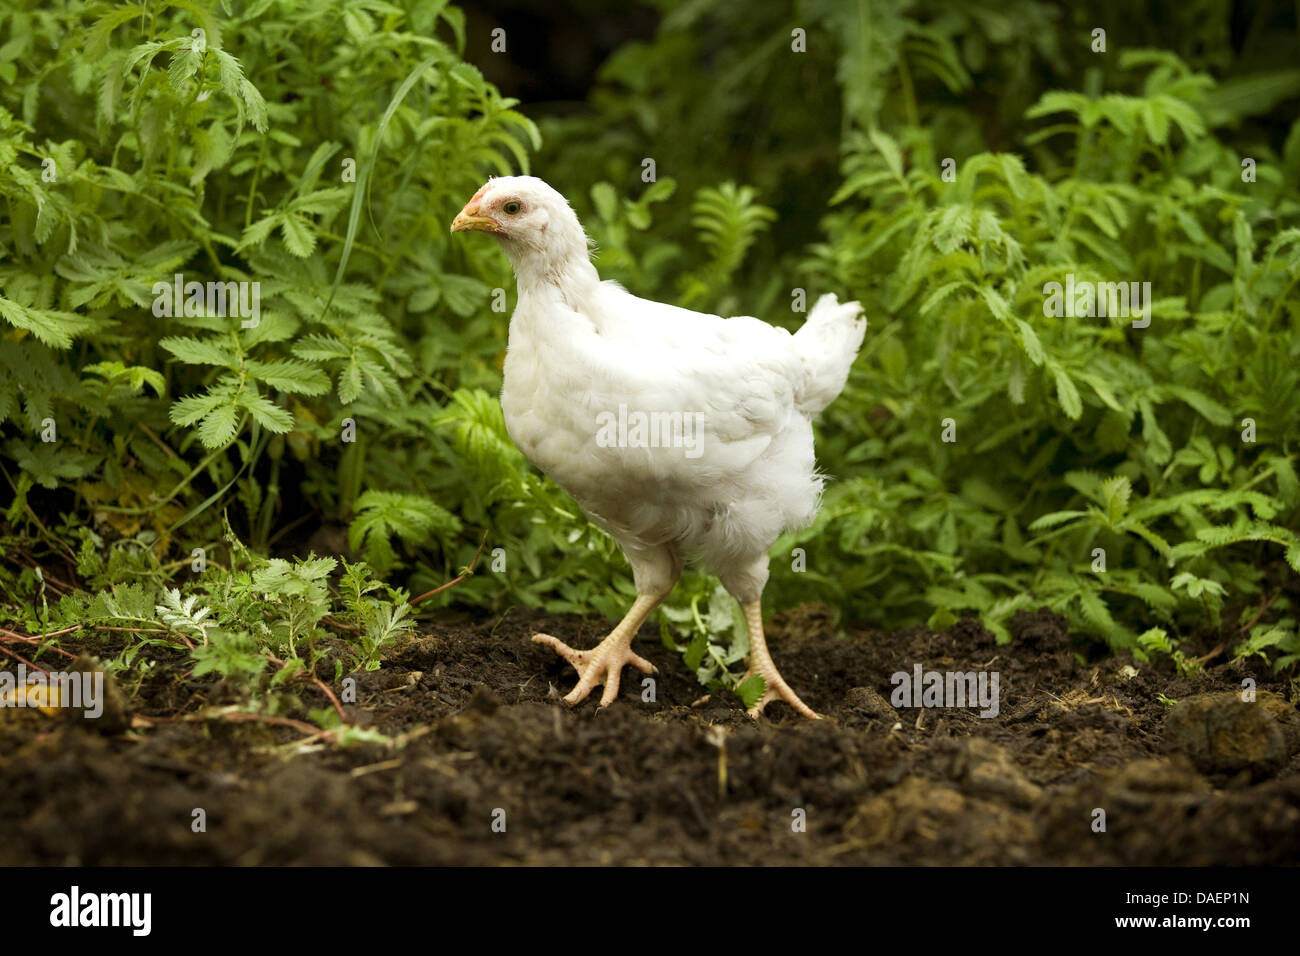 domestic fowl (Gallus gallus f. domestica), white chick in chicken run, Germany Stock Photo